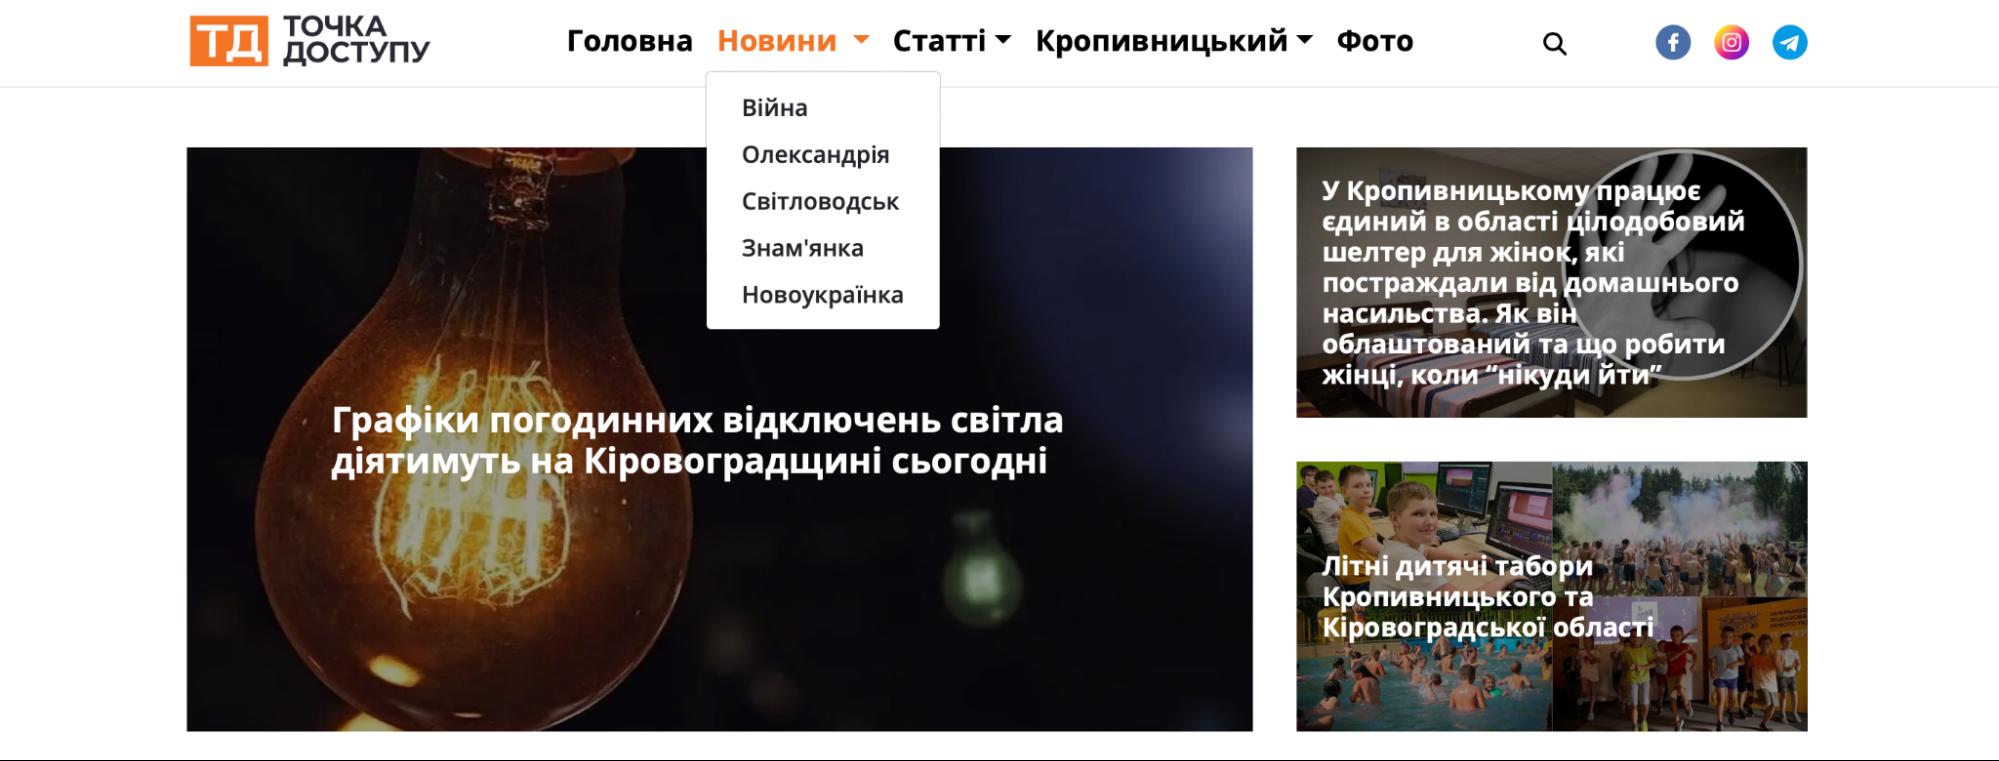 фото - скрін з сайту dostyp.com.ua